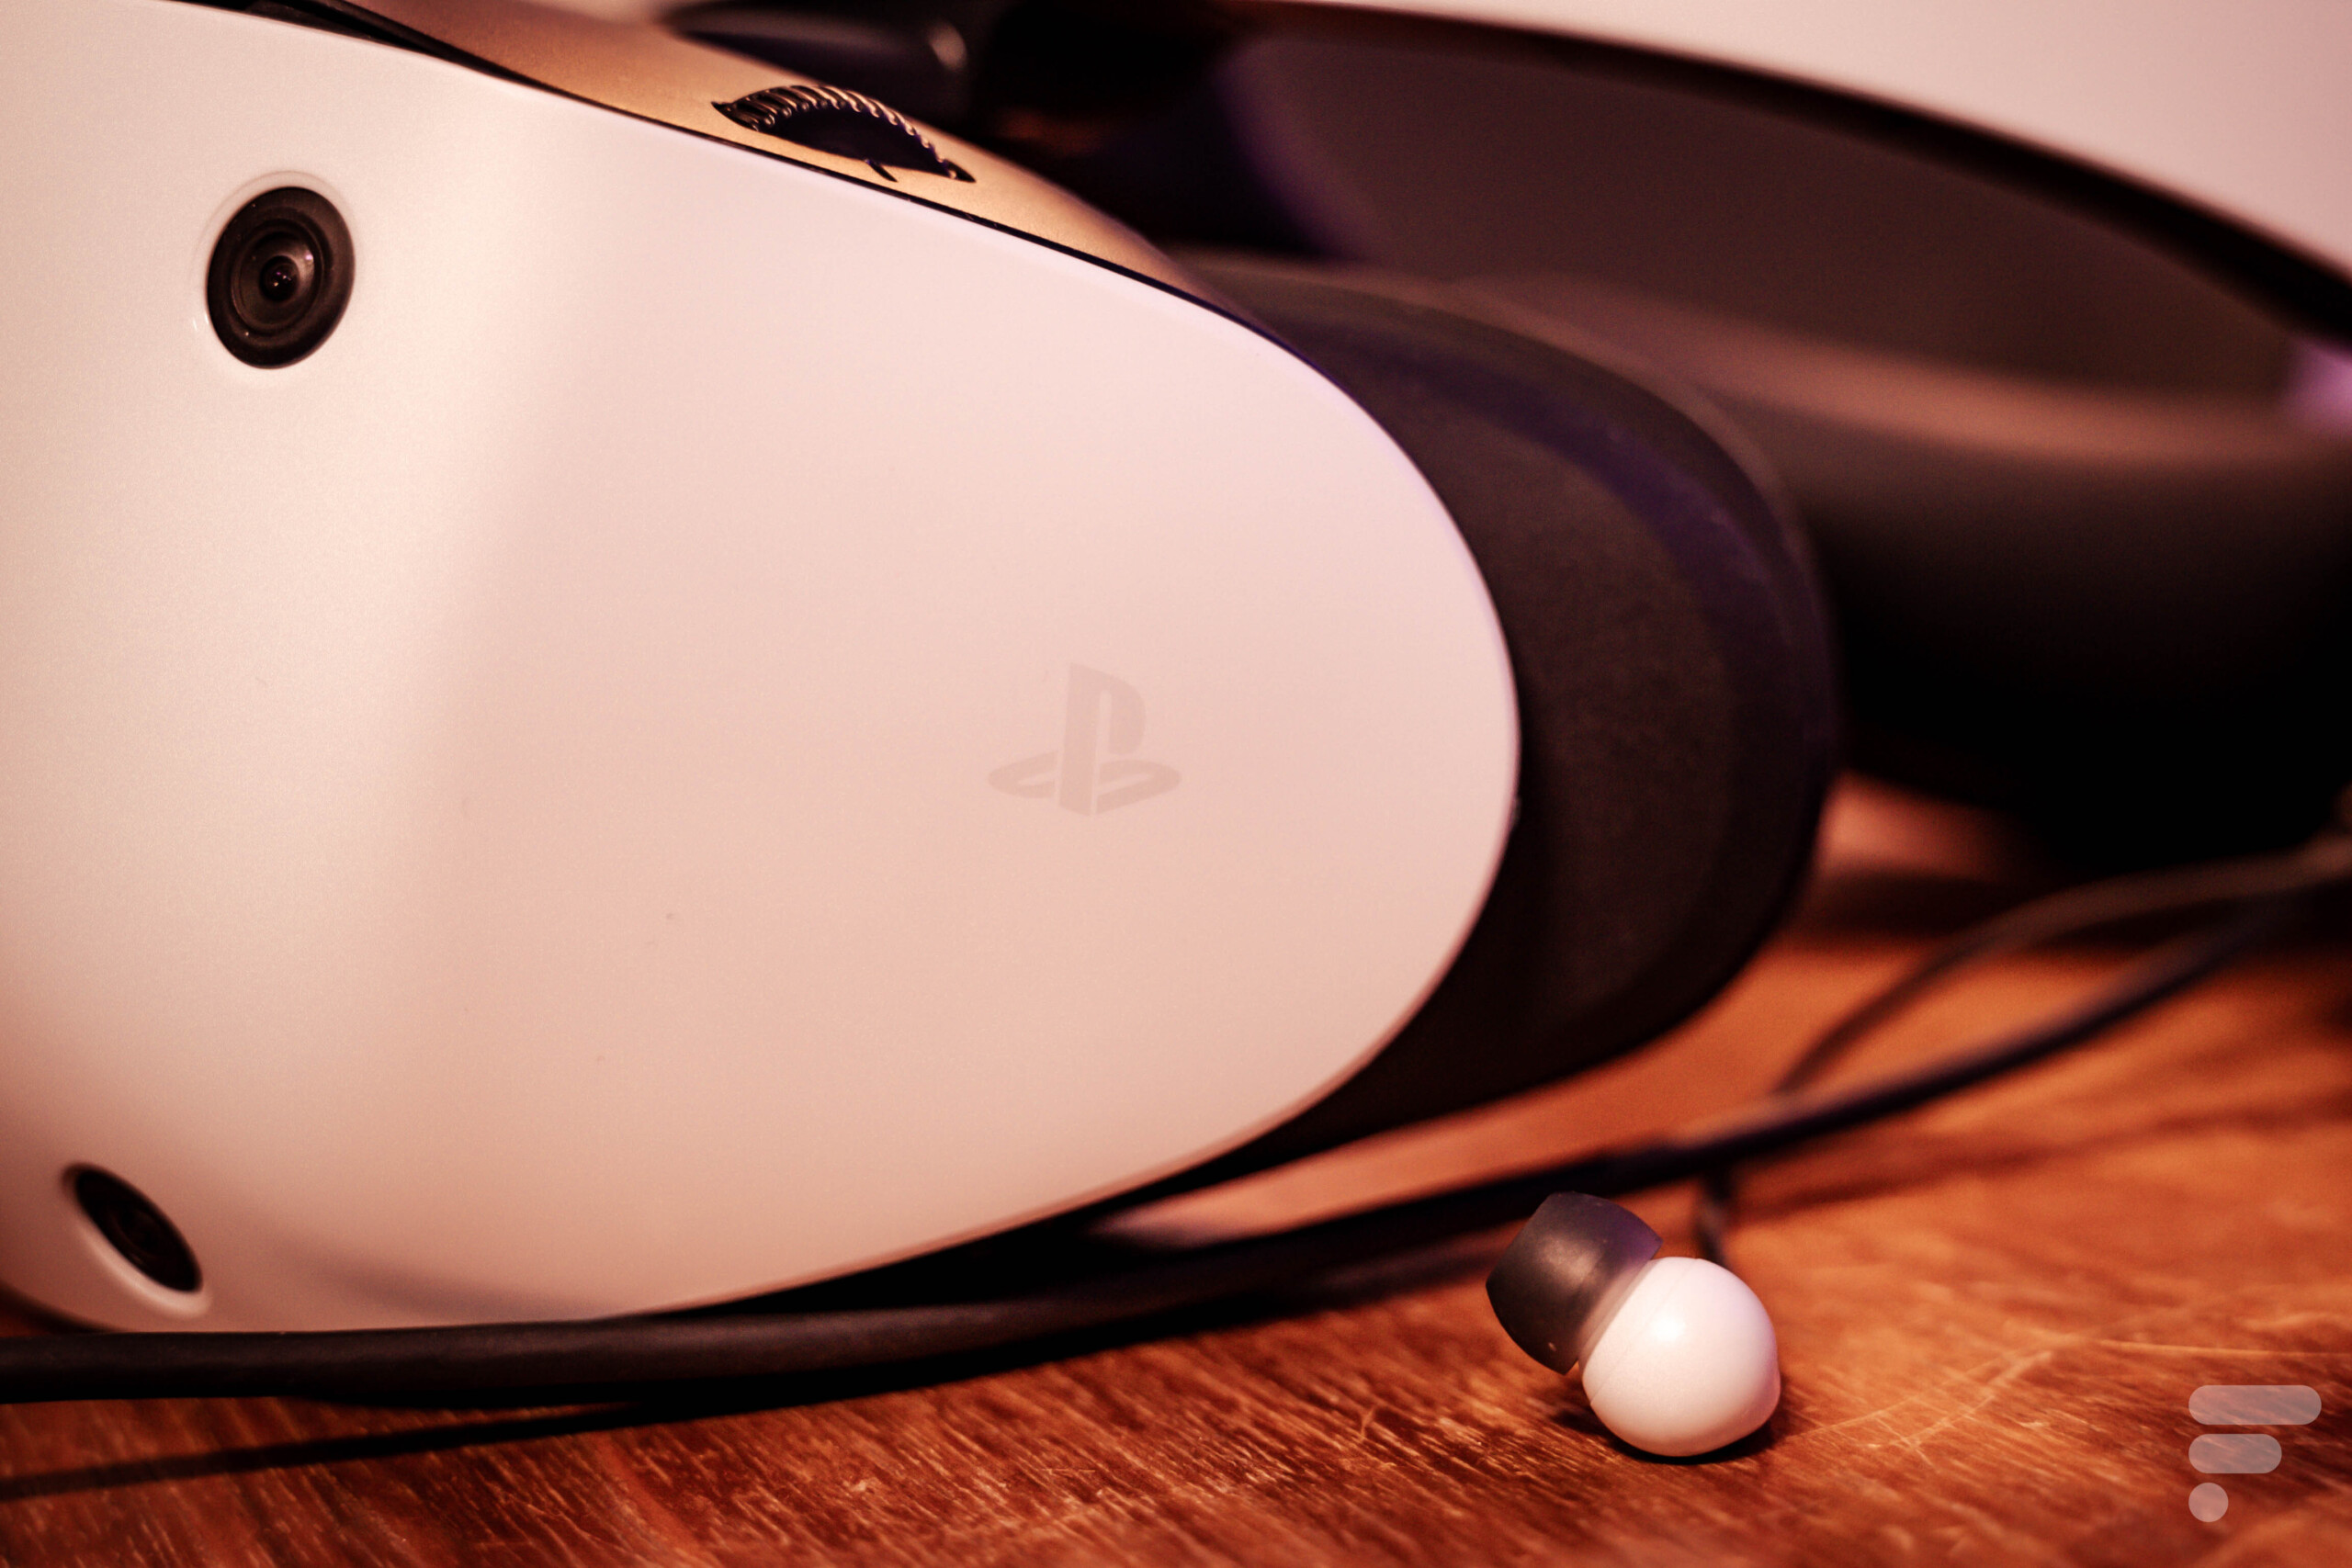 PlayStation VR 2 : Toutes les infos sur le futur casque VR de la PS5